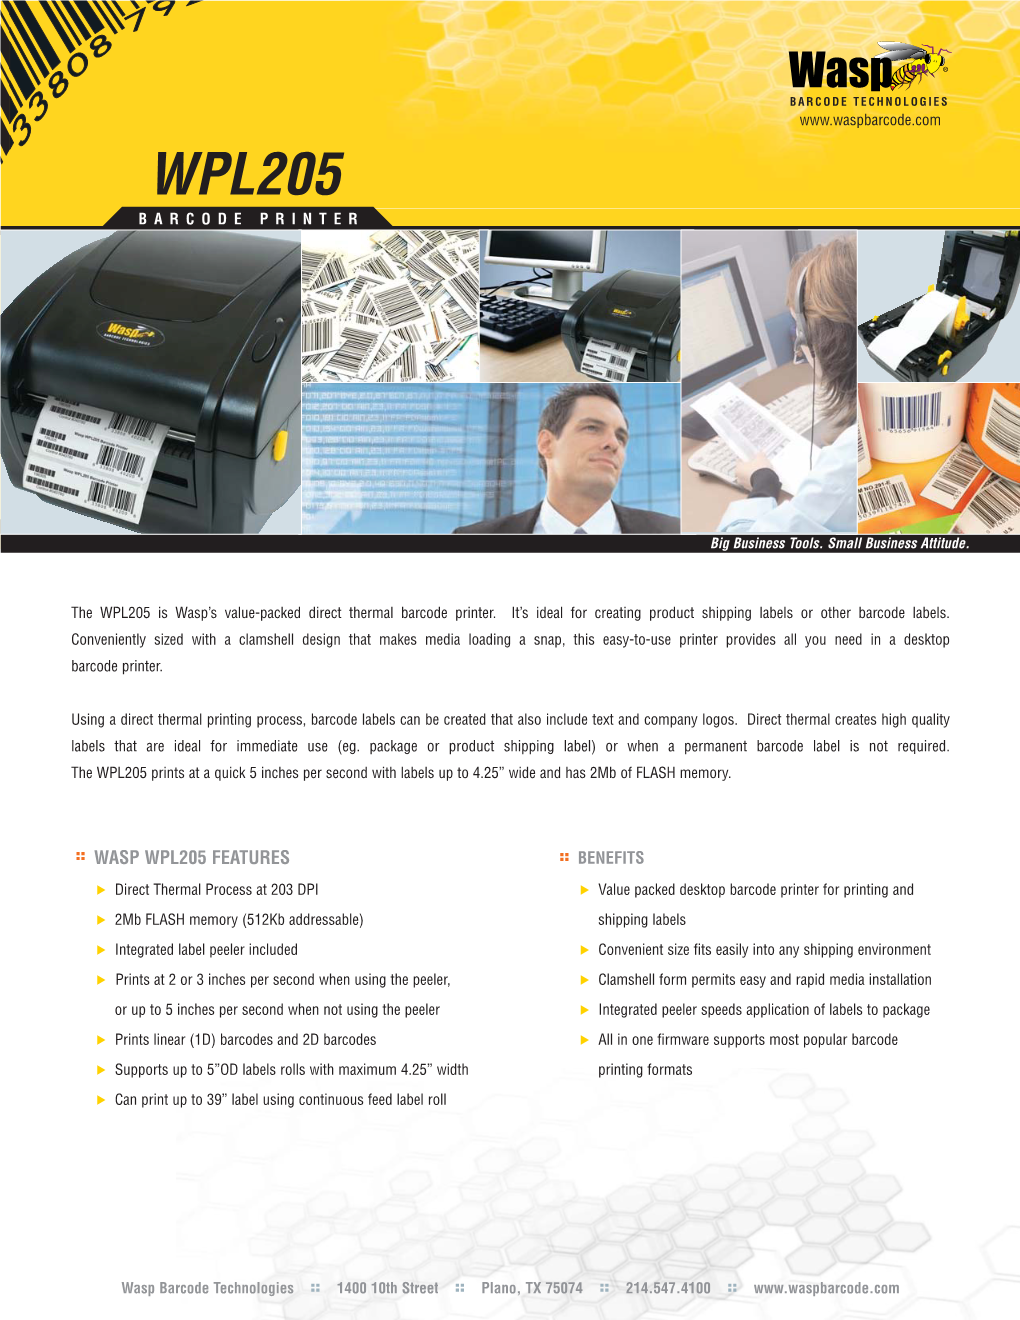 Wpl205 Barcode Printer